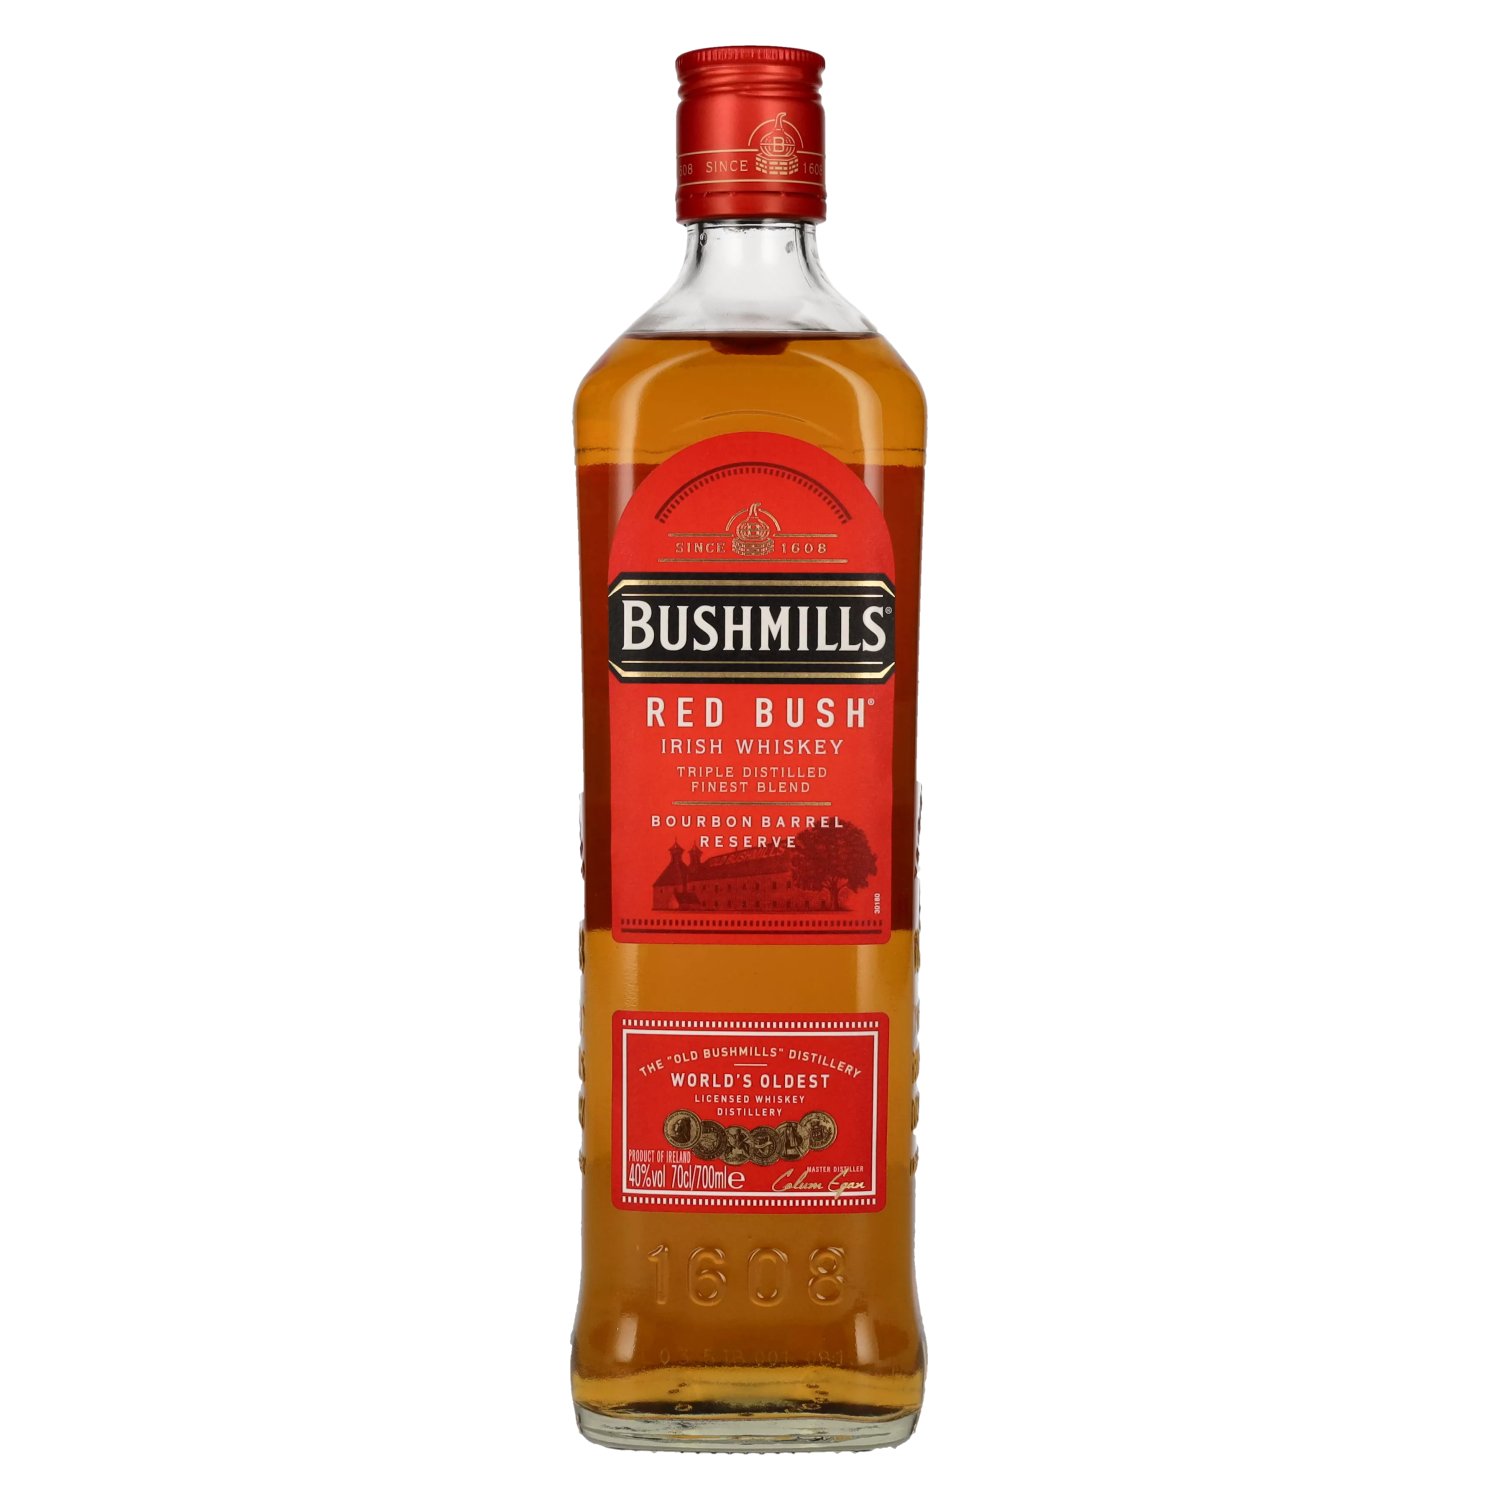 Irish BUSH Whiskey 40% 0,7l Bushmills Vol. RED